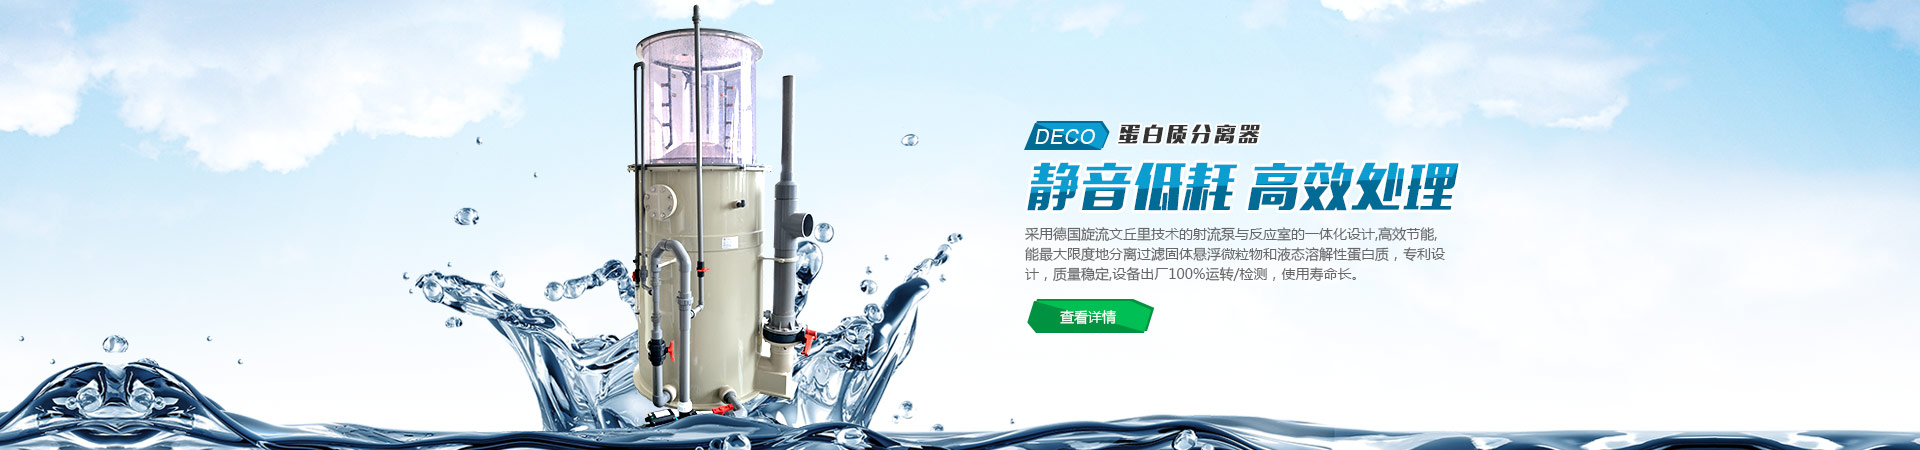 上海中科电气集团销售部门